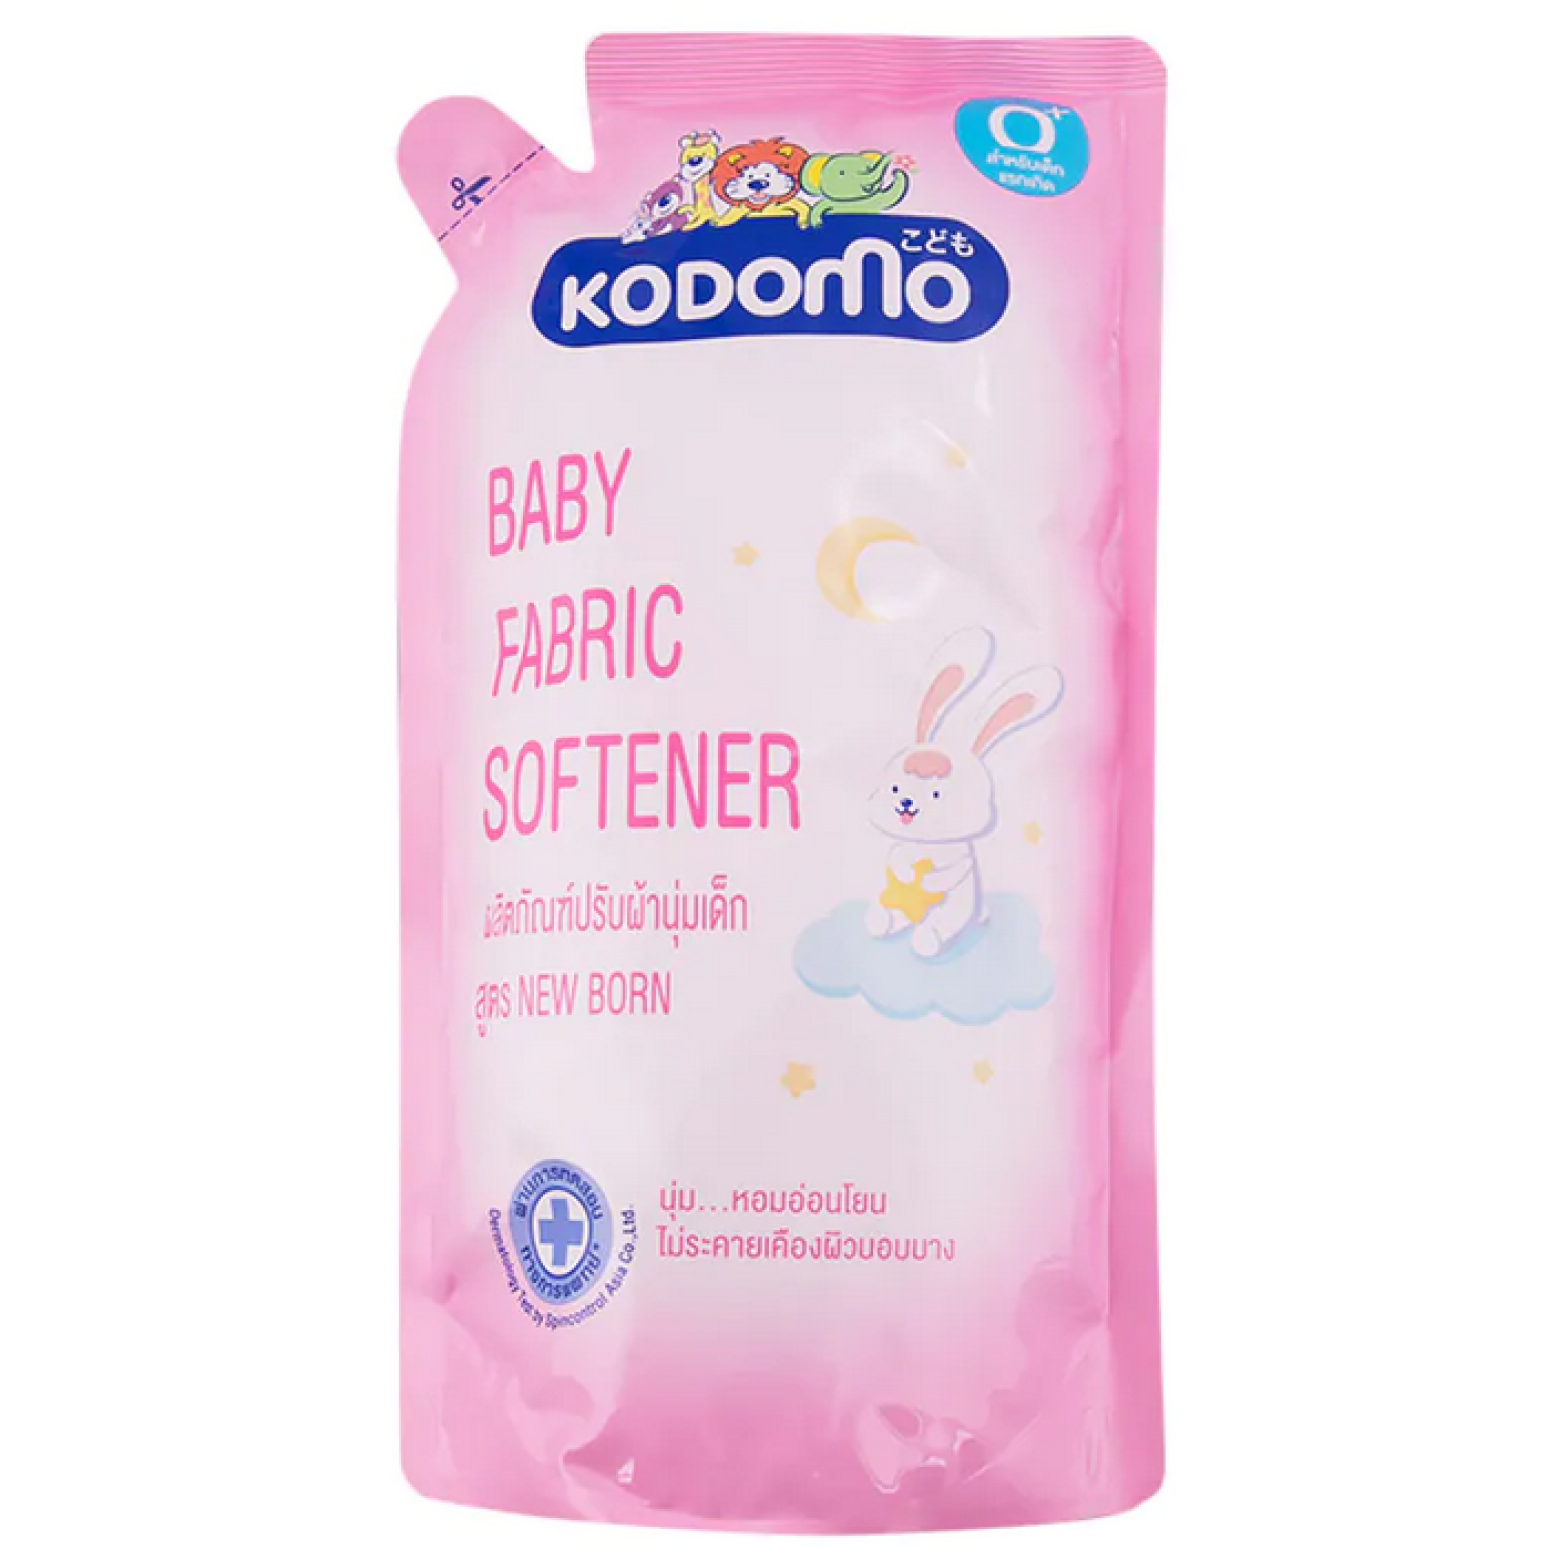 Kodomo Baby Fabric Softener New Born 600ml New Born